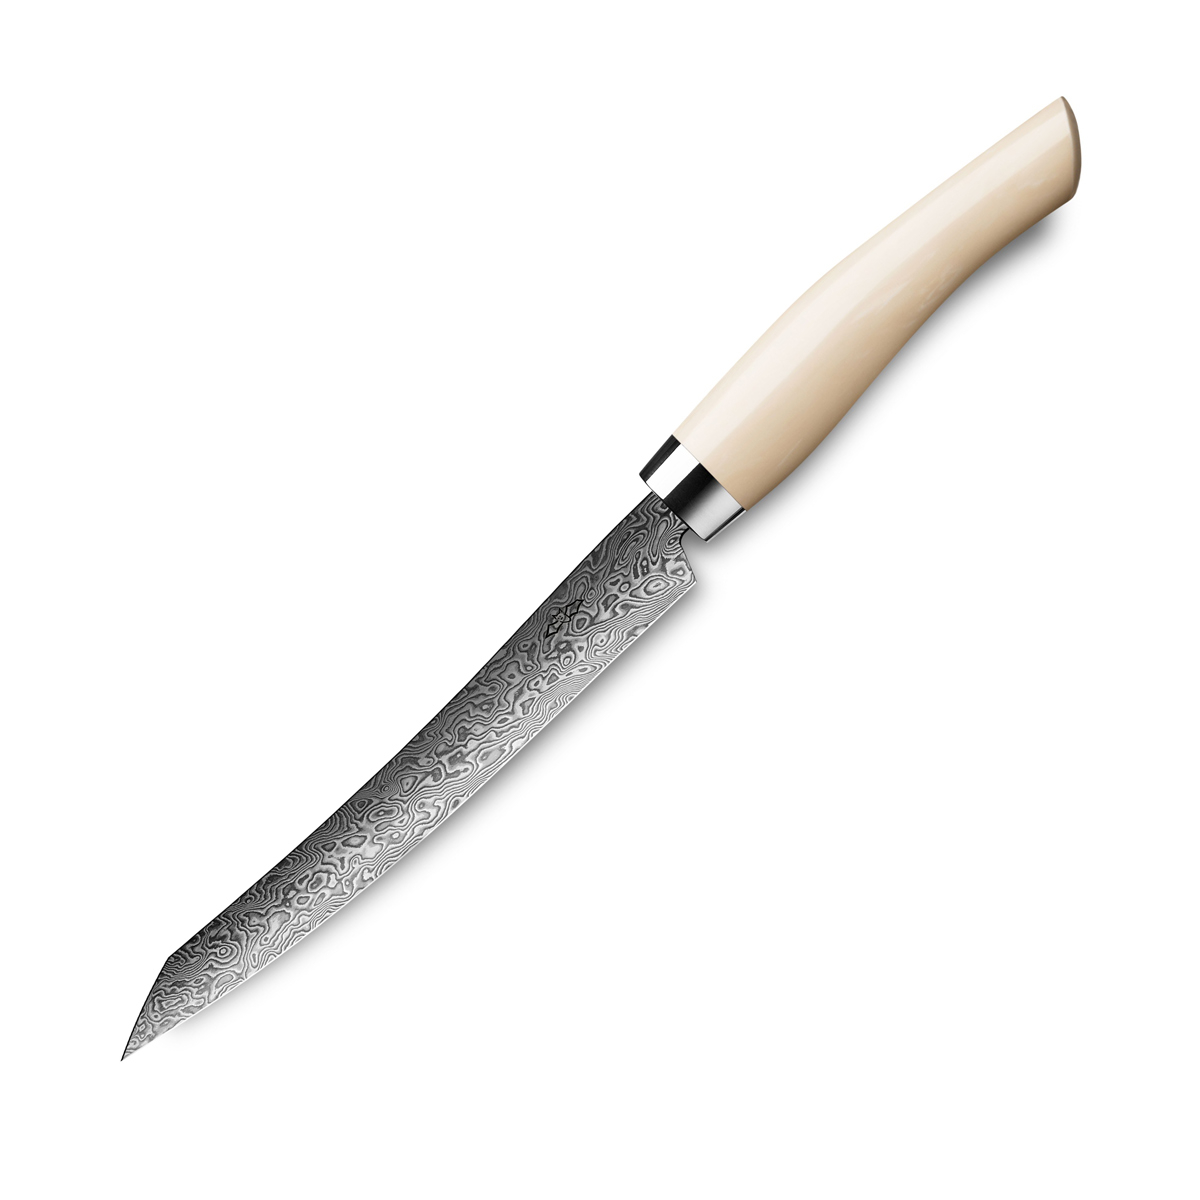 Nesmuk Exklusiv C90 Damast Slicer 16 cm - Griff Juma Ivory